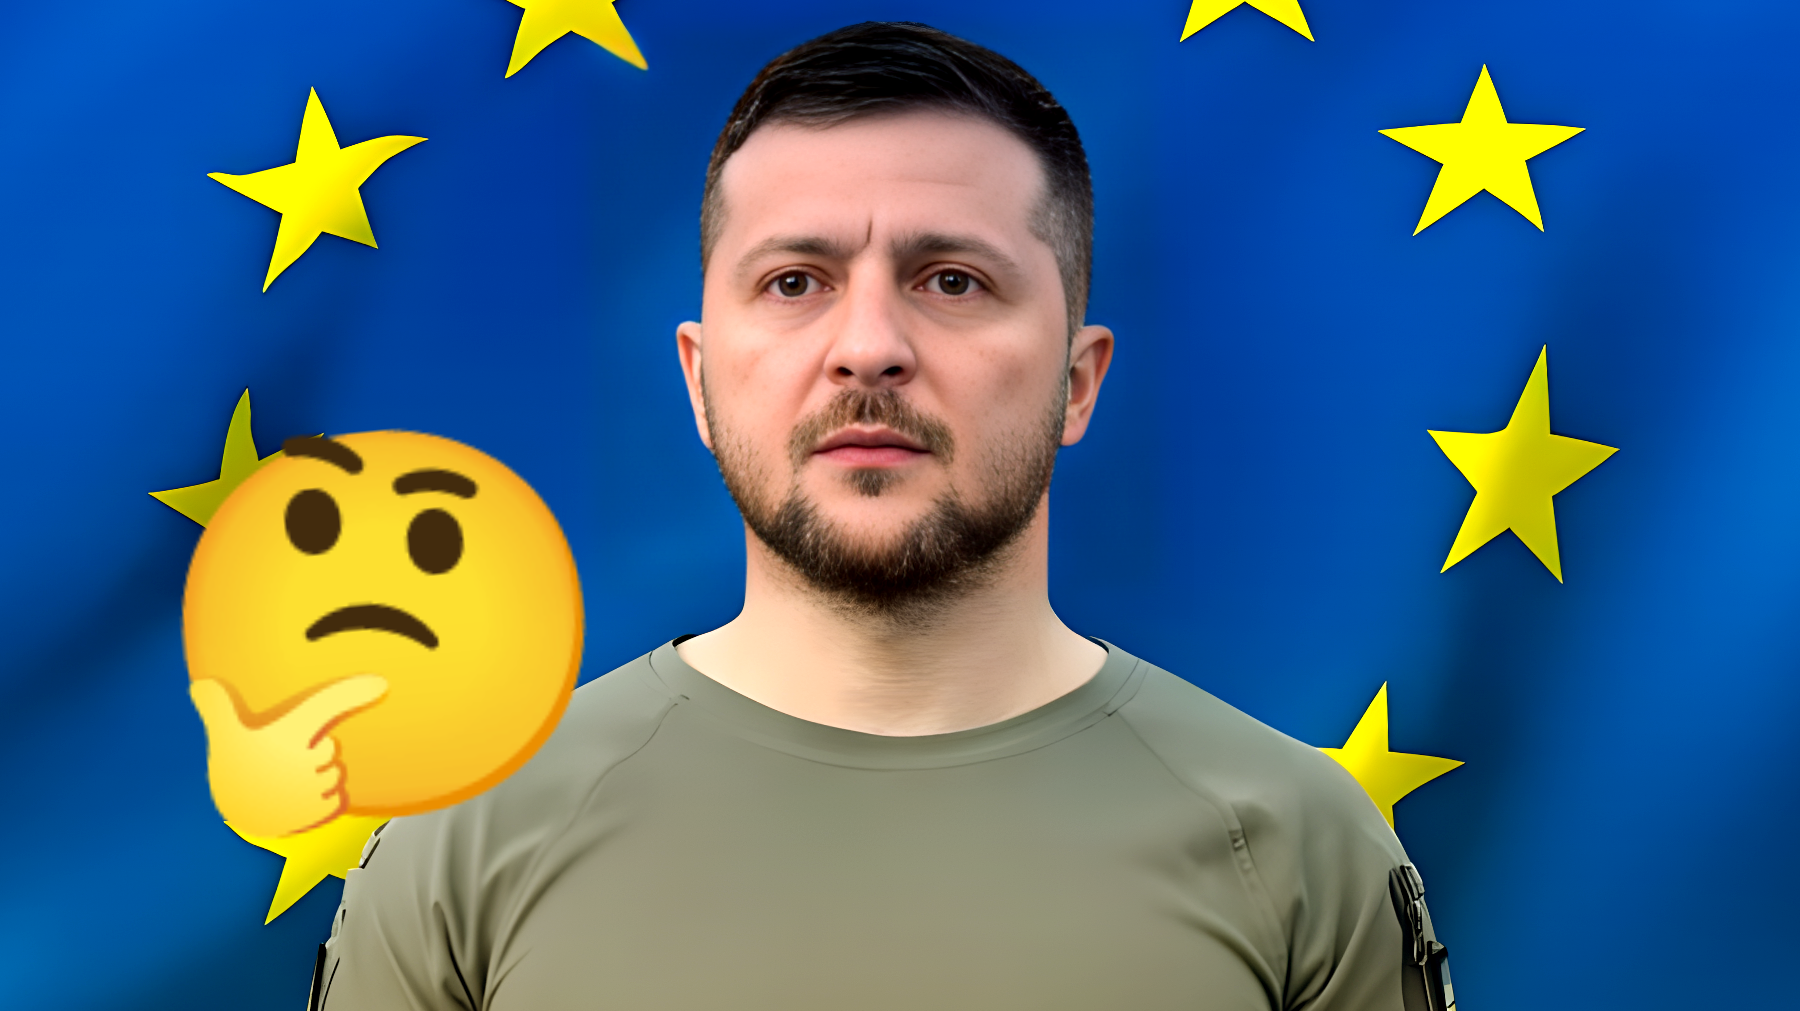 L'Ucraina ha finalmente ottenuto il via libera per entrare nell'Unione Europea: cosa deve fare adesso?